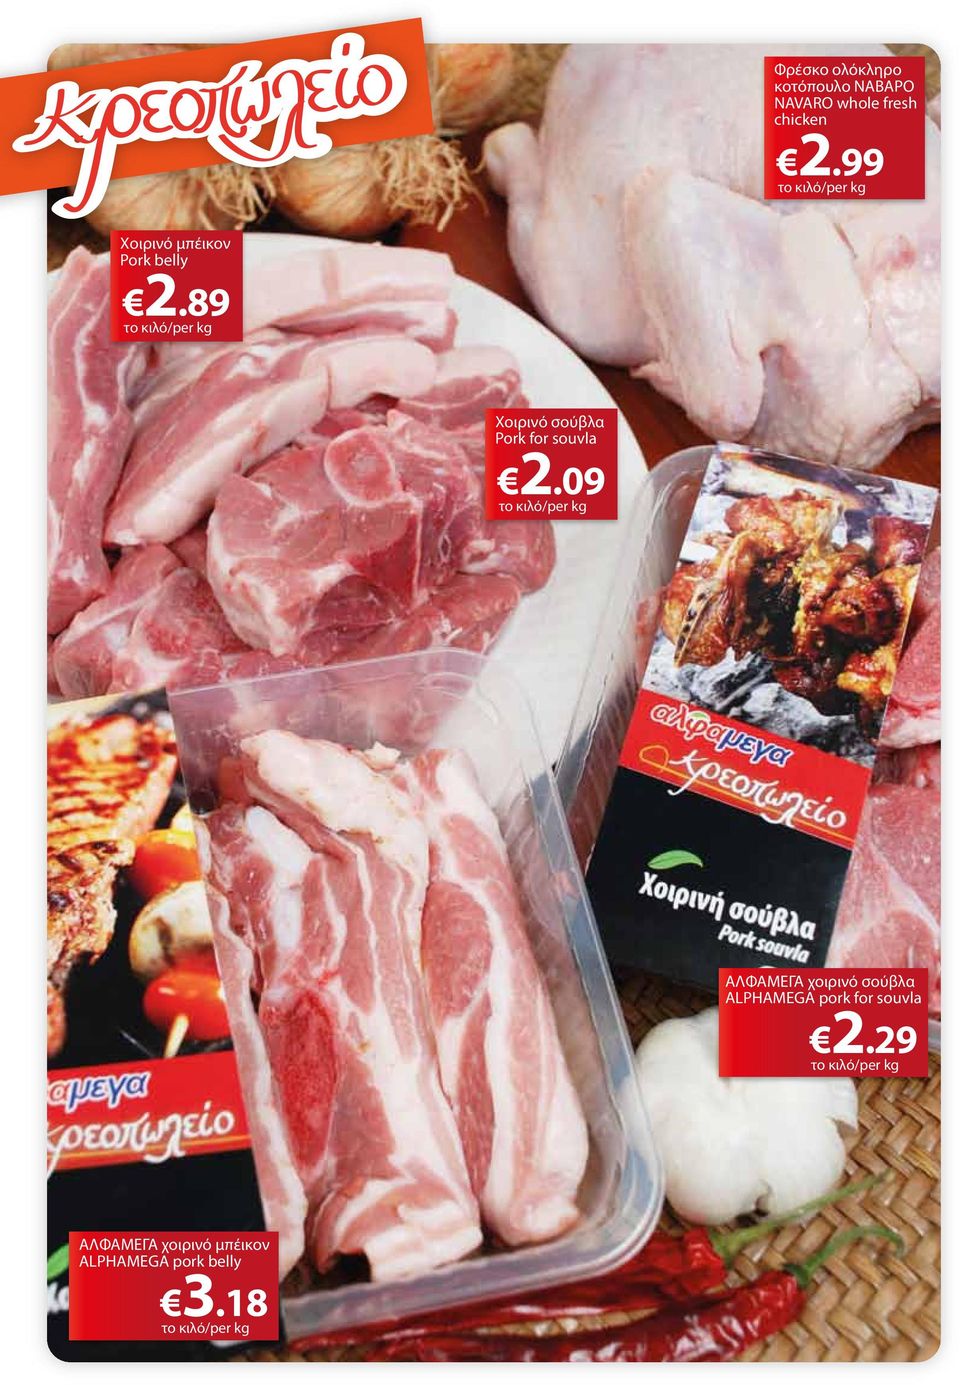 89 το κιλό/per kg Χοιρινό σούβλα Pork for souvla 2.